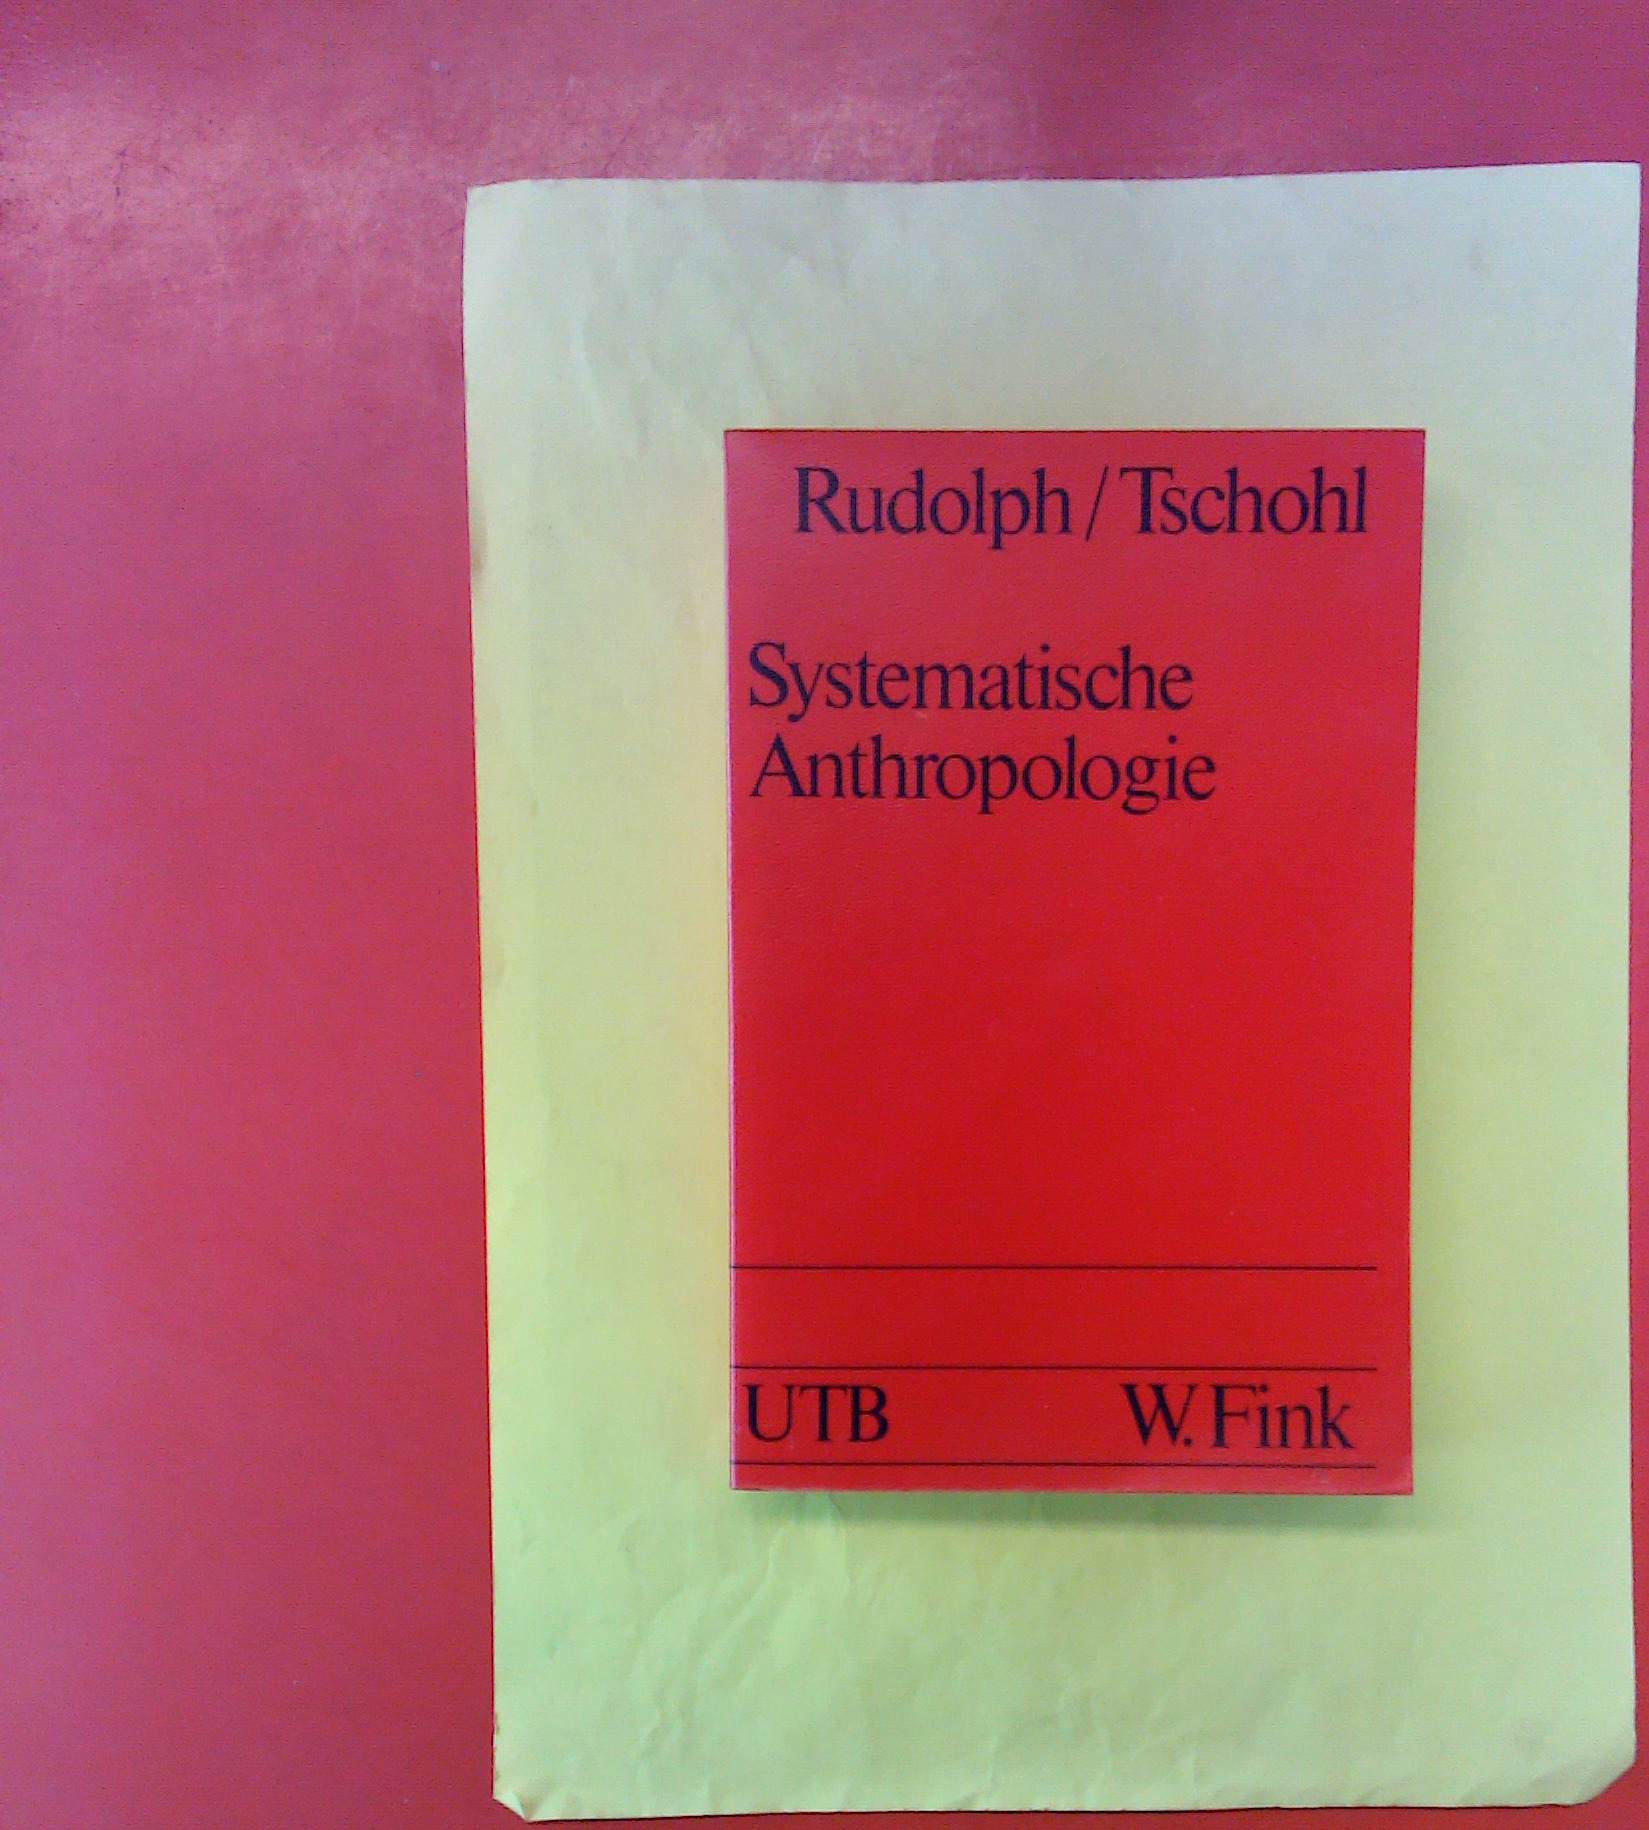 Systematische Anthropologie - Rudolph/ Tschohl